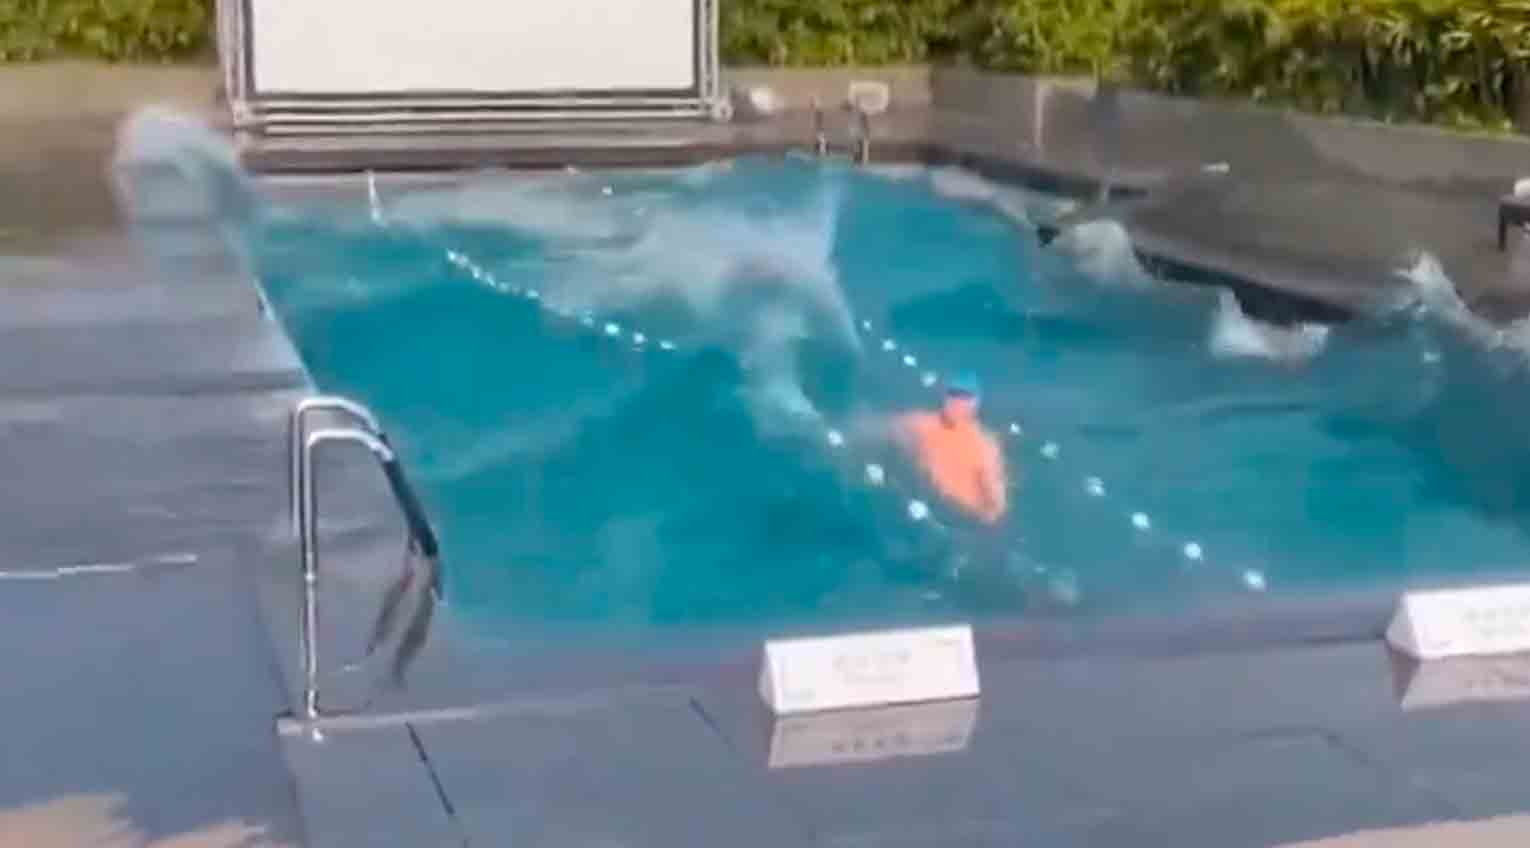 Vidéo : Homme piégé dans une piscine pendant un tremblement de terre à Taïwan. Photo et vidéo : Twitter @rawsalerts